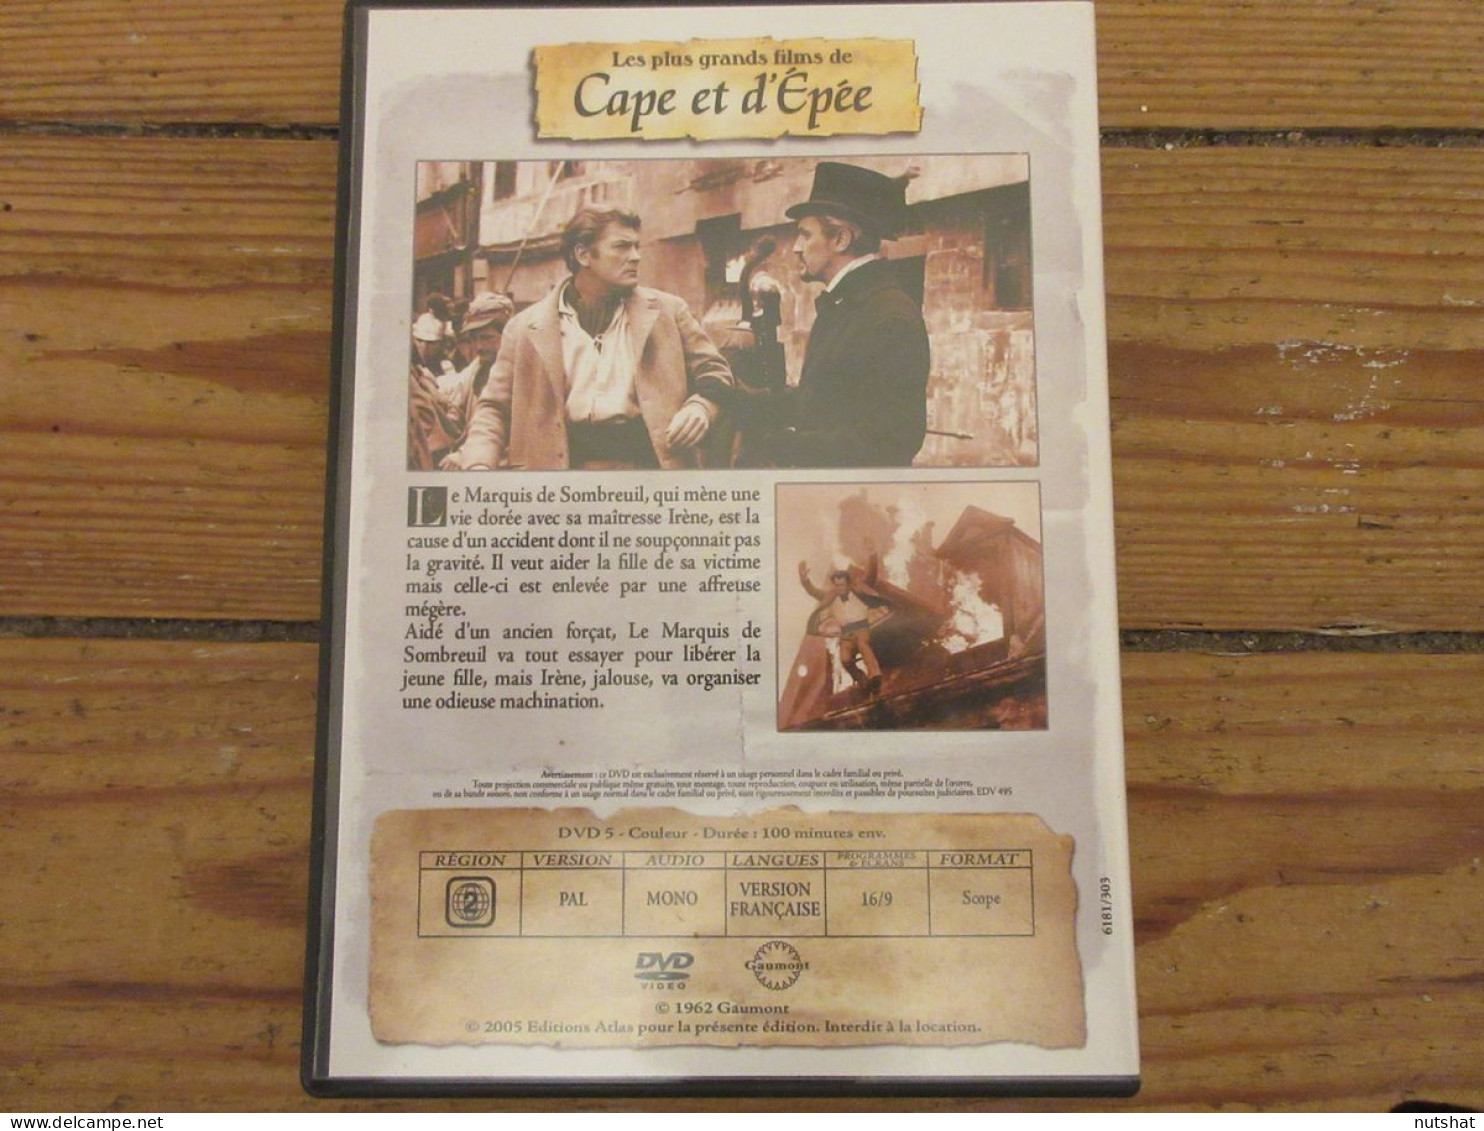 DVD CINEMA CAPE Et EPEE Les MYSTERES De PARIS Jean MARAIS 2005 100mn Francais - TV-Serien